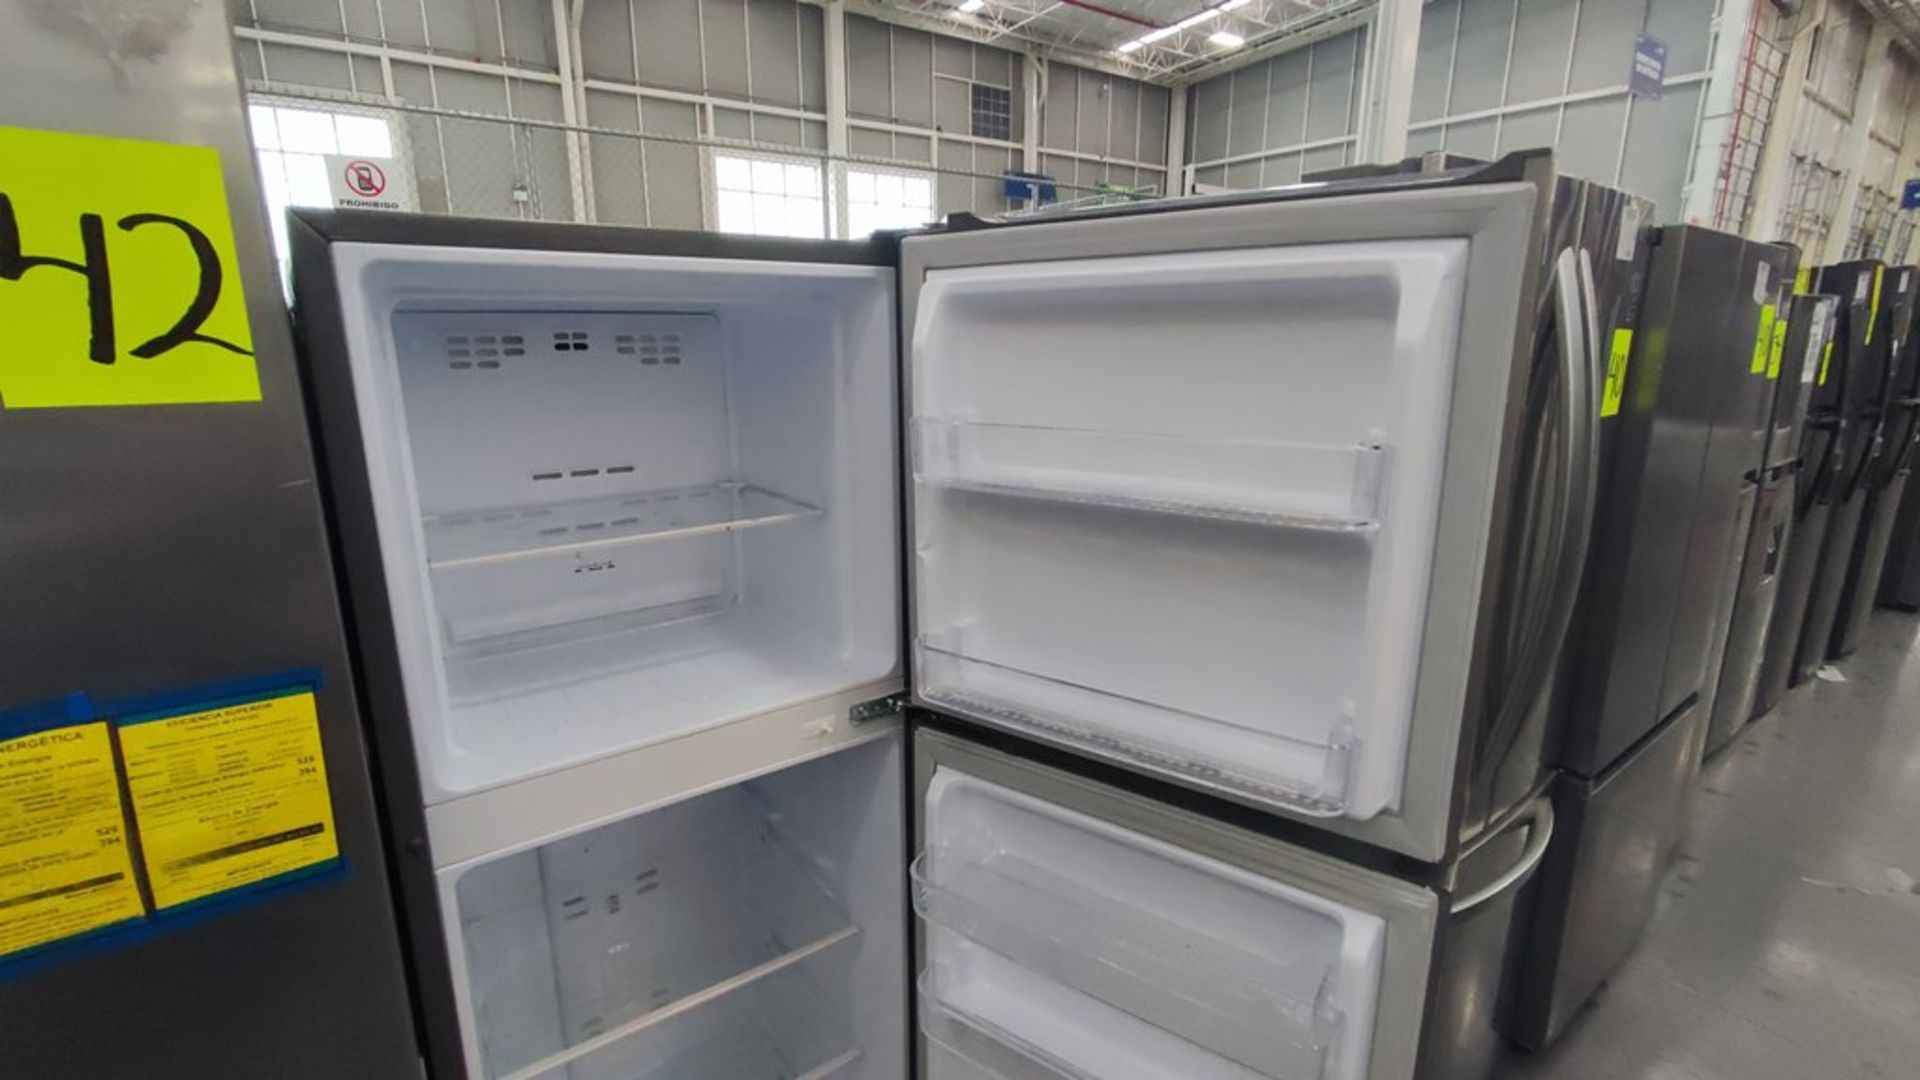 Lote de 2 Refrigeradores contiene: 1 Refrigerador Marca Hisense Modelo BCYNY, No de serie 1B0205Z00 - Image 4 of 11